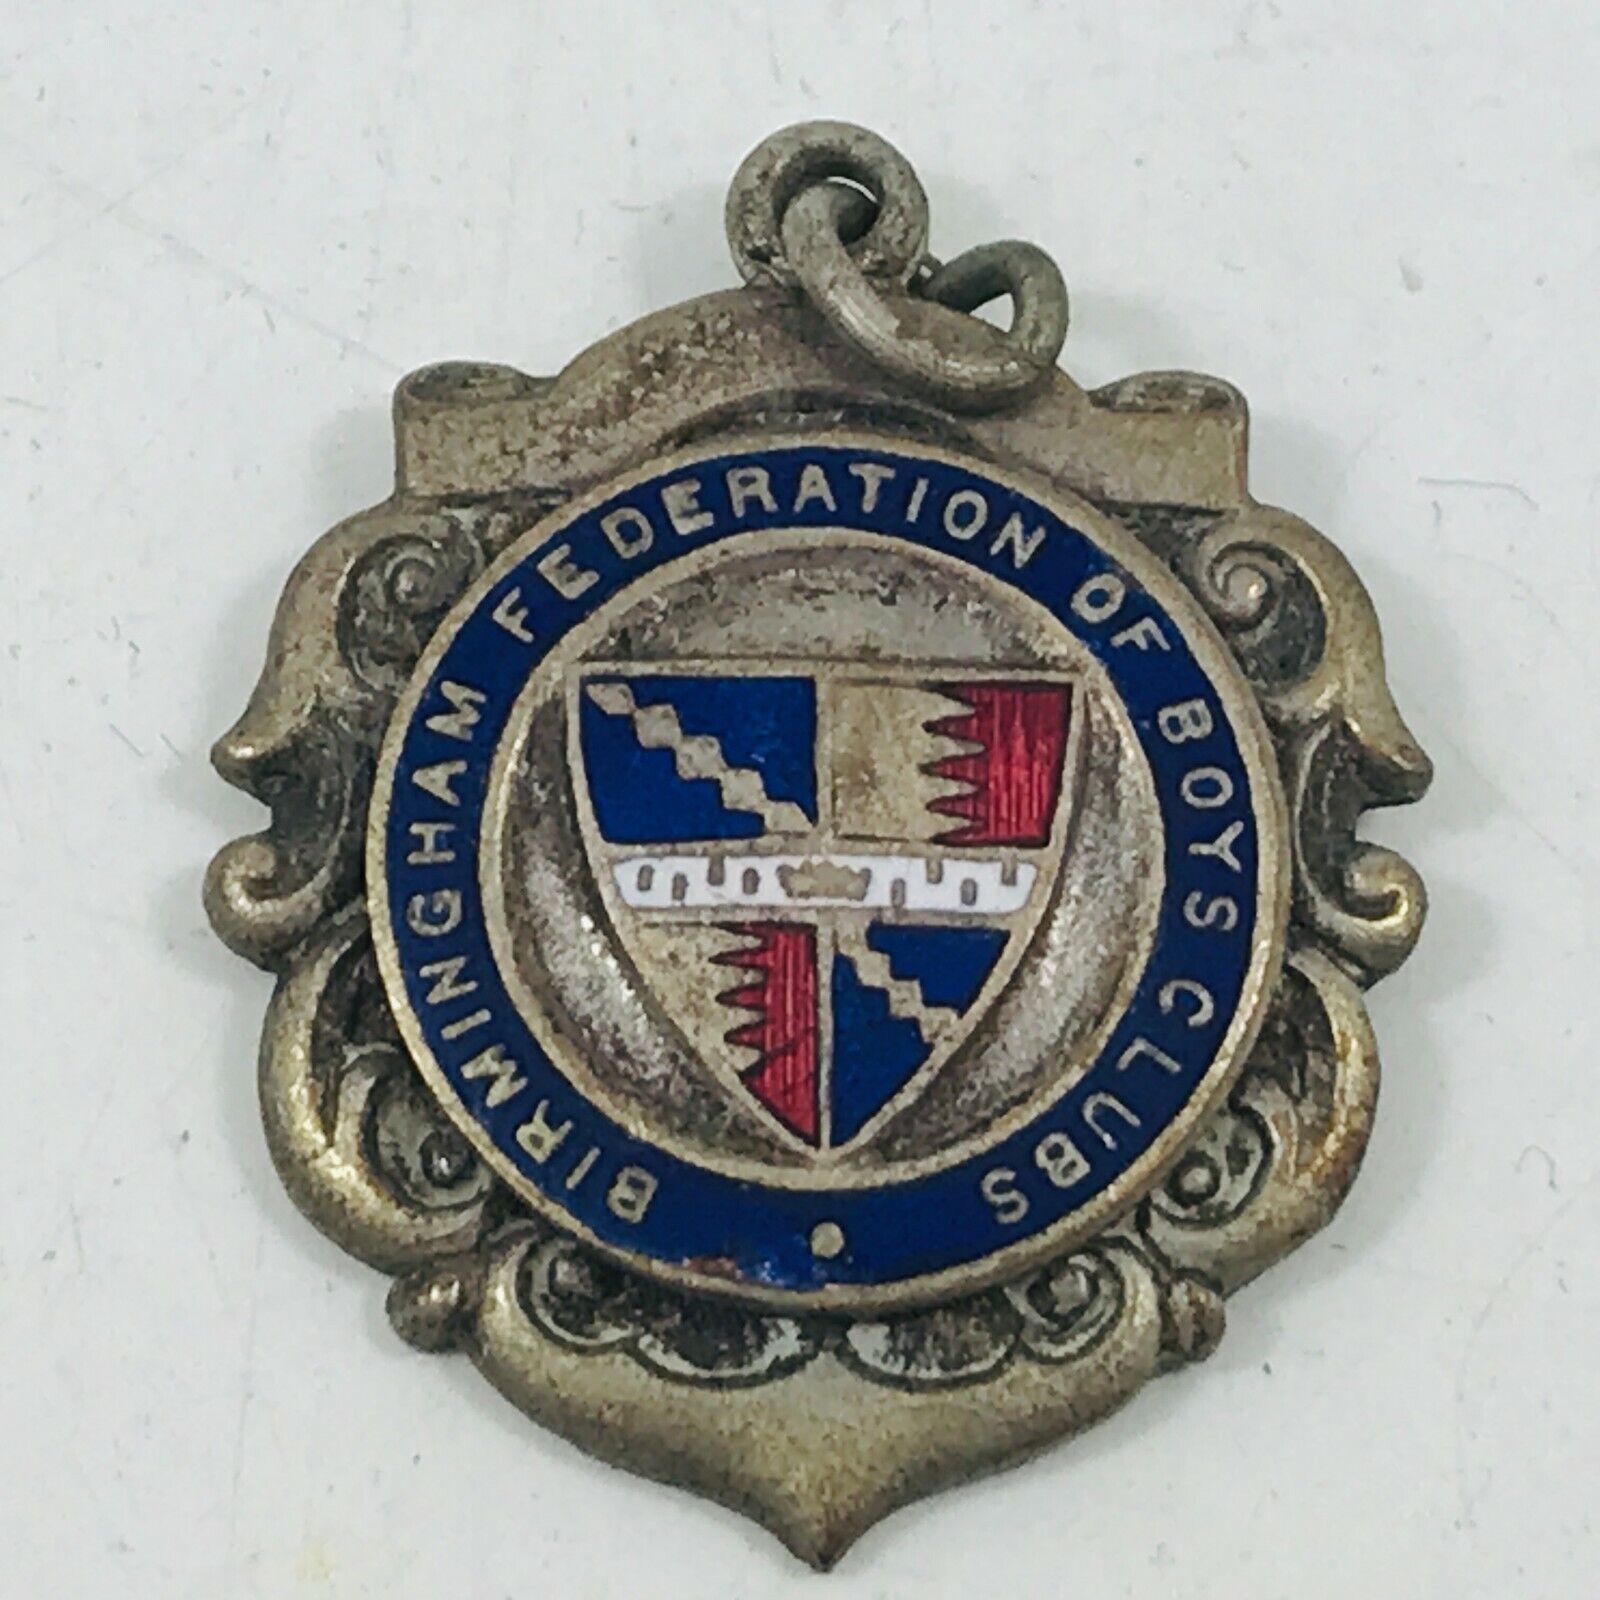 Vintage Fob Medal Birmingham Federation Of Boys Clubs Swanhurst Youth Club 